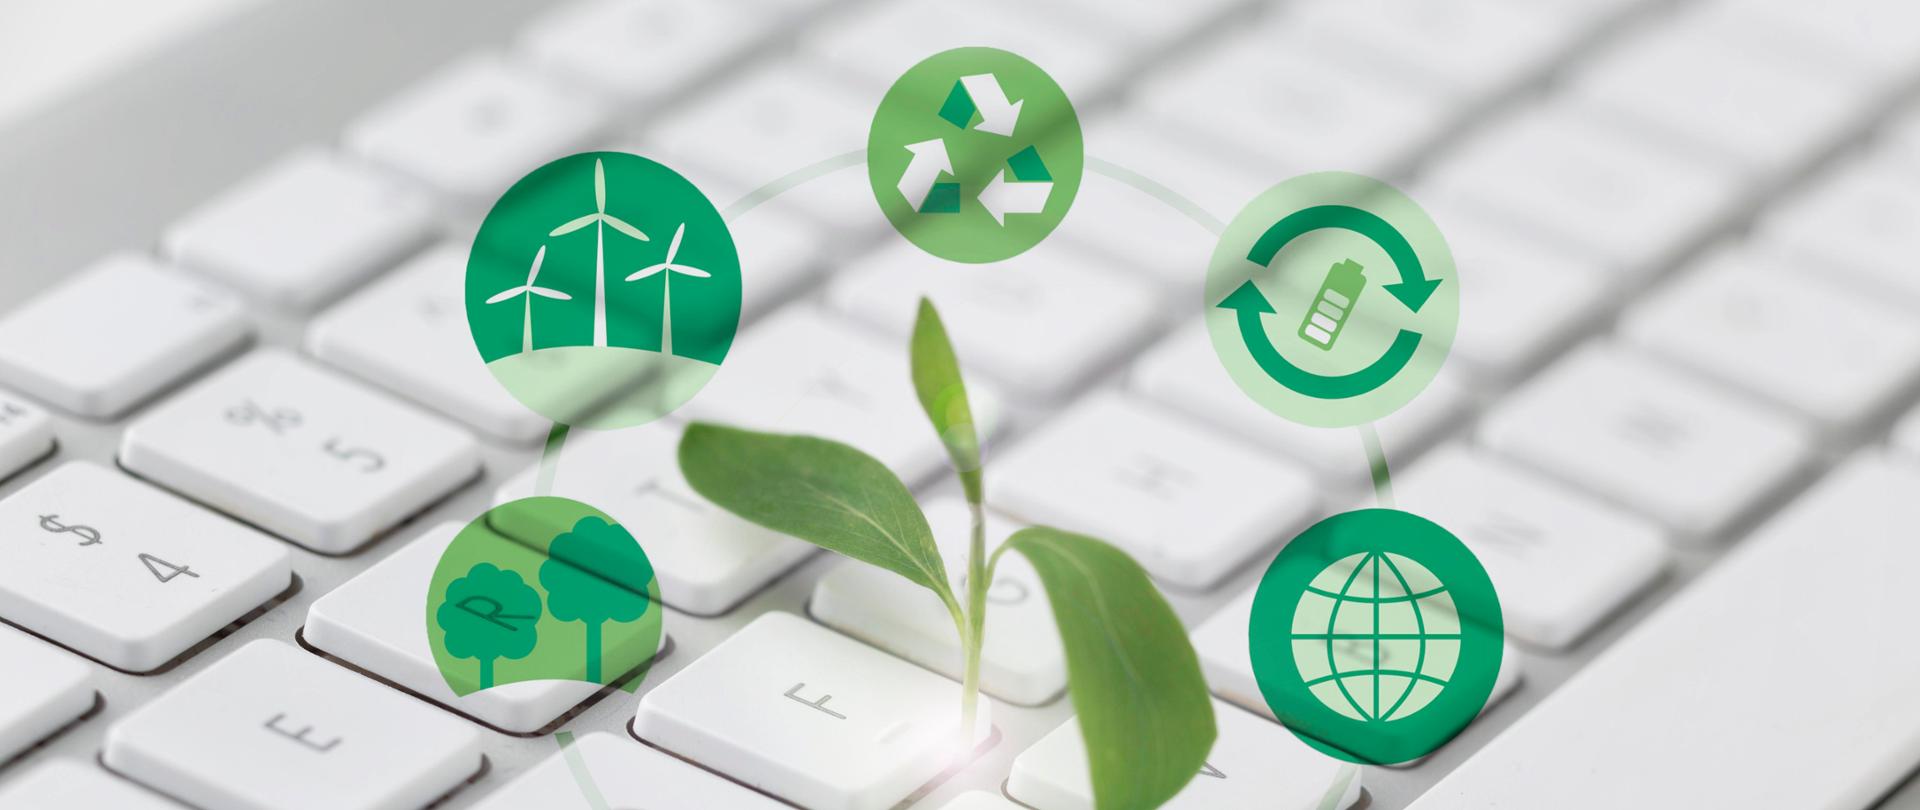 Zdjęcie klawiatury komputera nad nią zielone ikonki symbolizujące odnawialne źródła energii